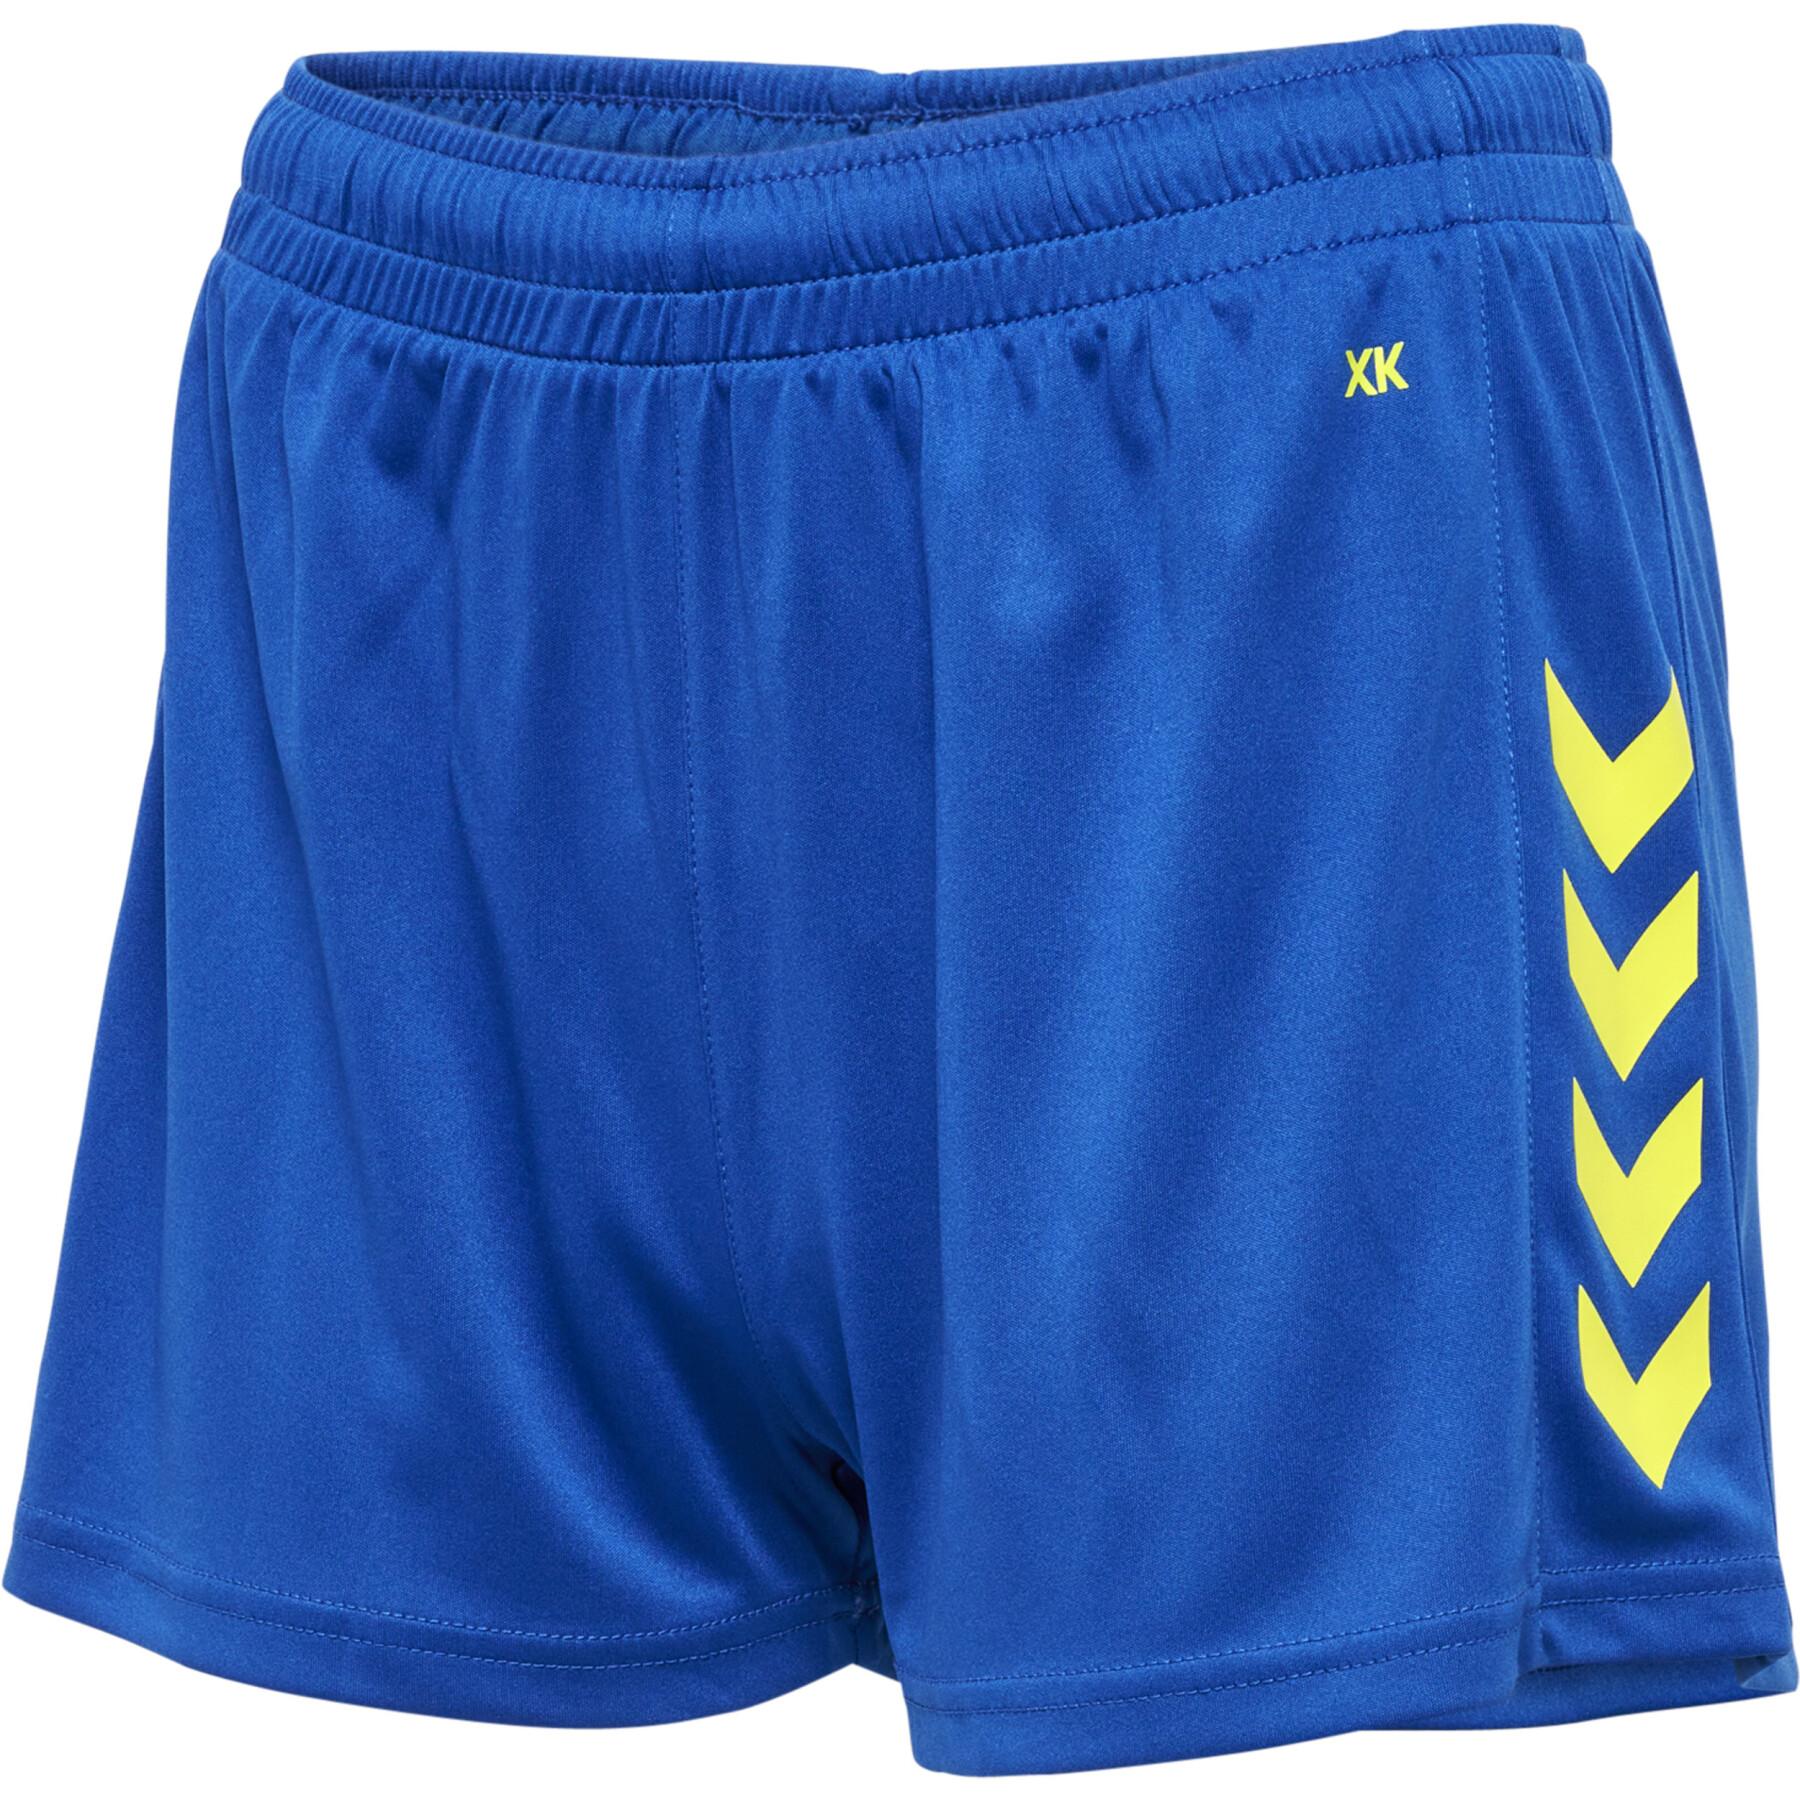 Women's polyester shorts Hummel XK - Hummel Brands - Handball